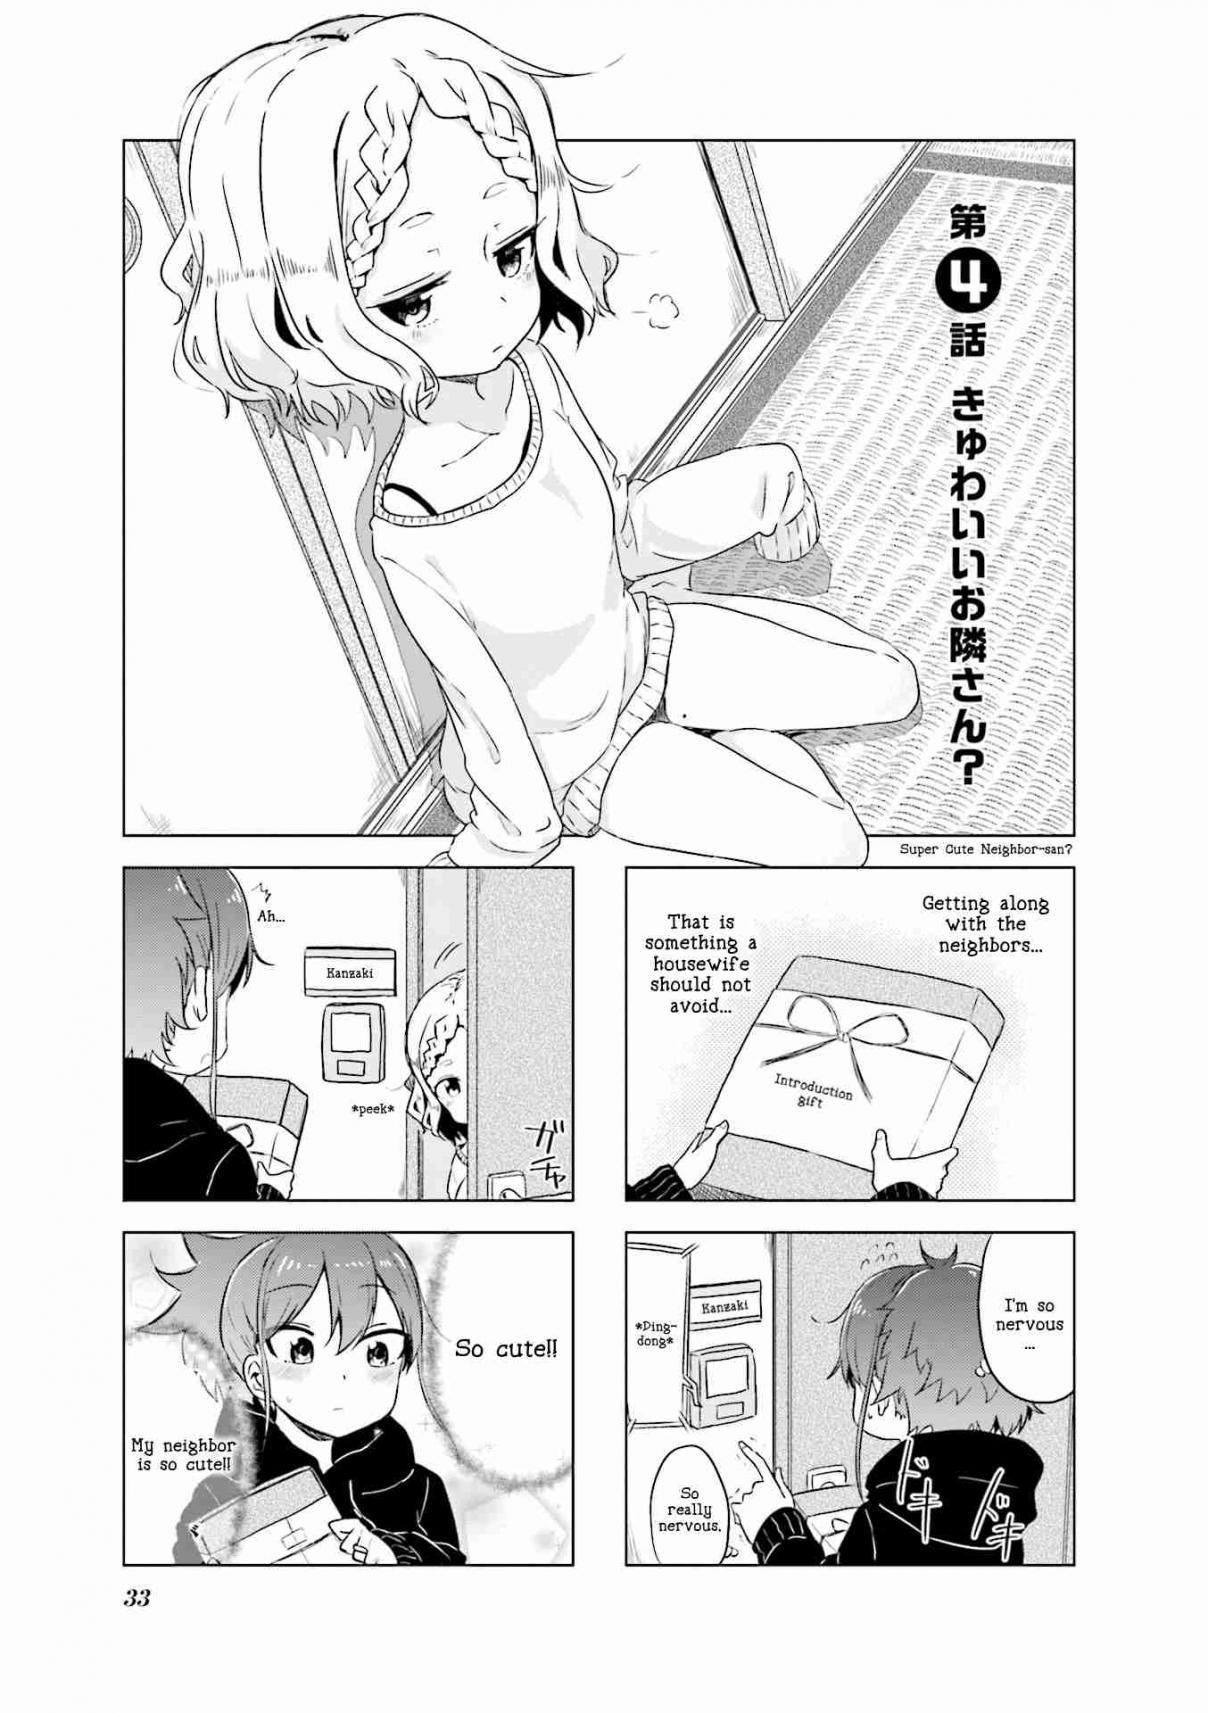 Oku sama wa Niizuma chan Vol. 1 Ch. 4 Kyuwaii Otonari san? "Super Cure Neighbor san?"